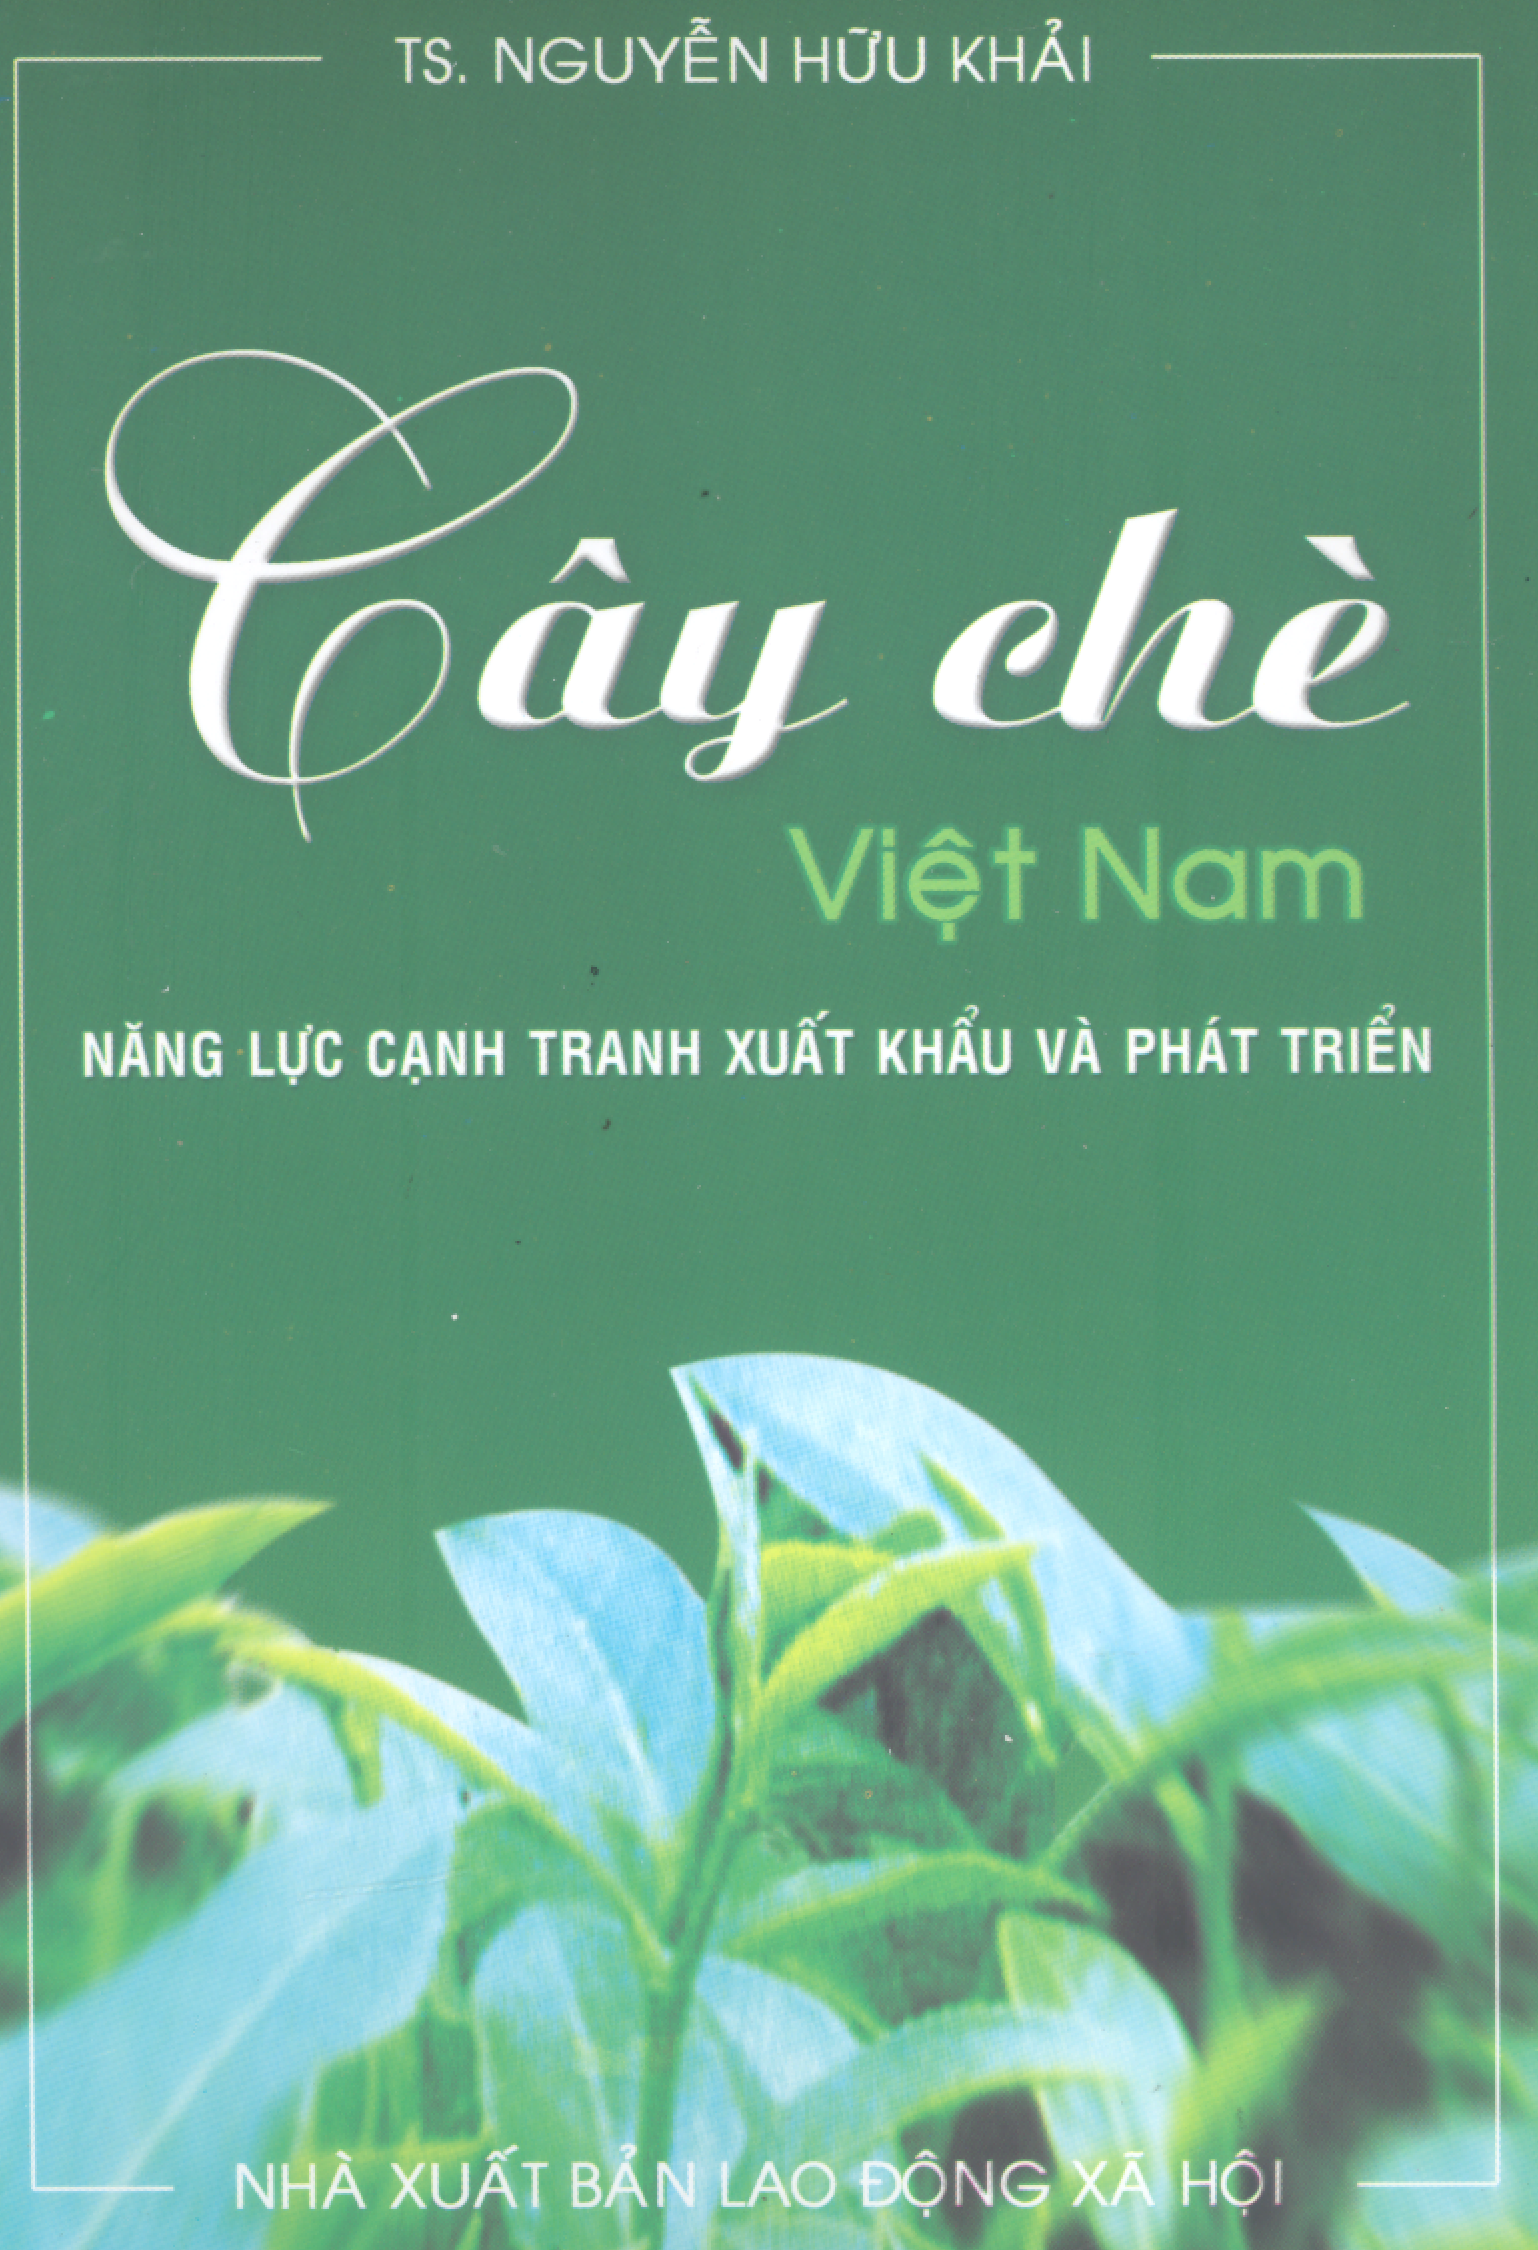 Cây chè Việt Nam: năng lực cạnh tranh xuất khẩu và phát triển